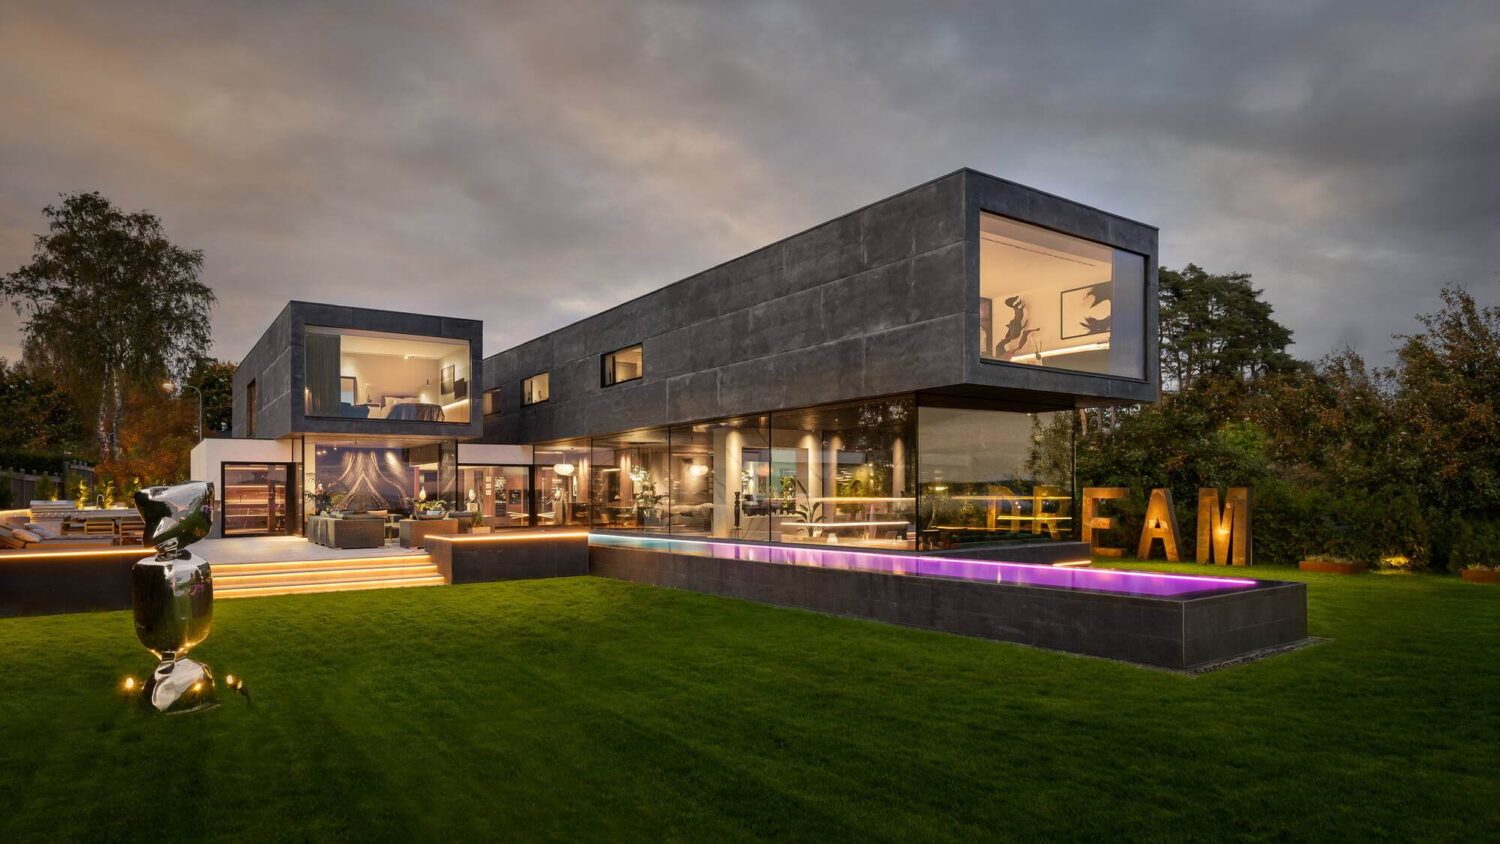 cubist-exterior-modern-architectural-villa-stockholm-sweden-nordroom